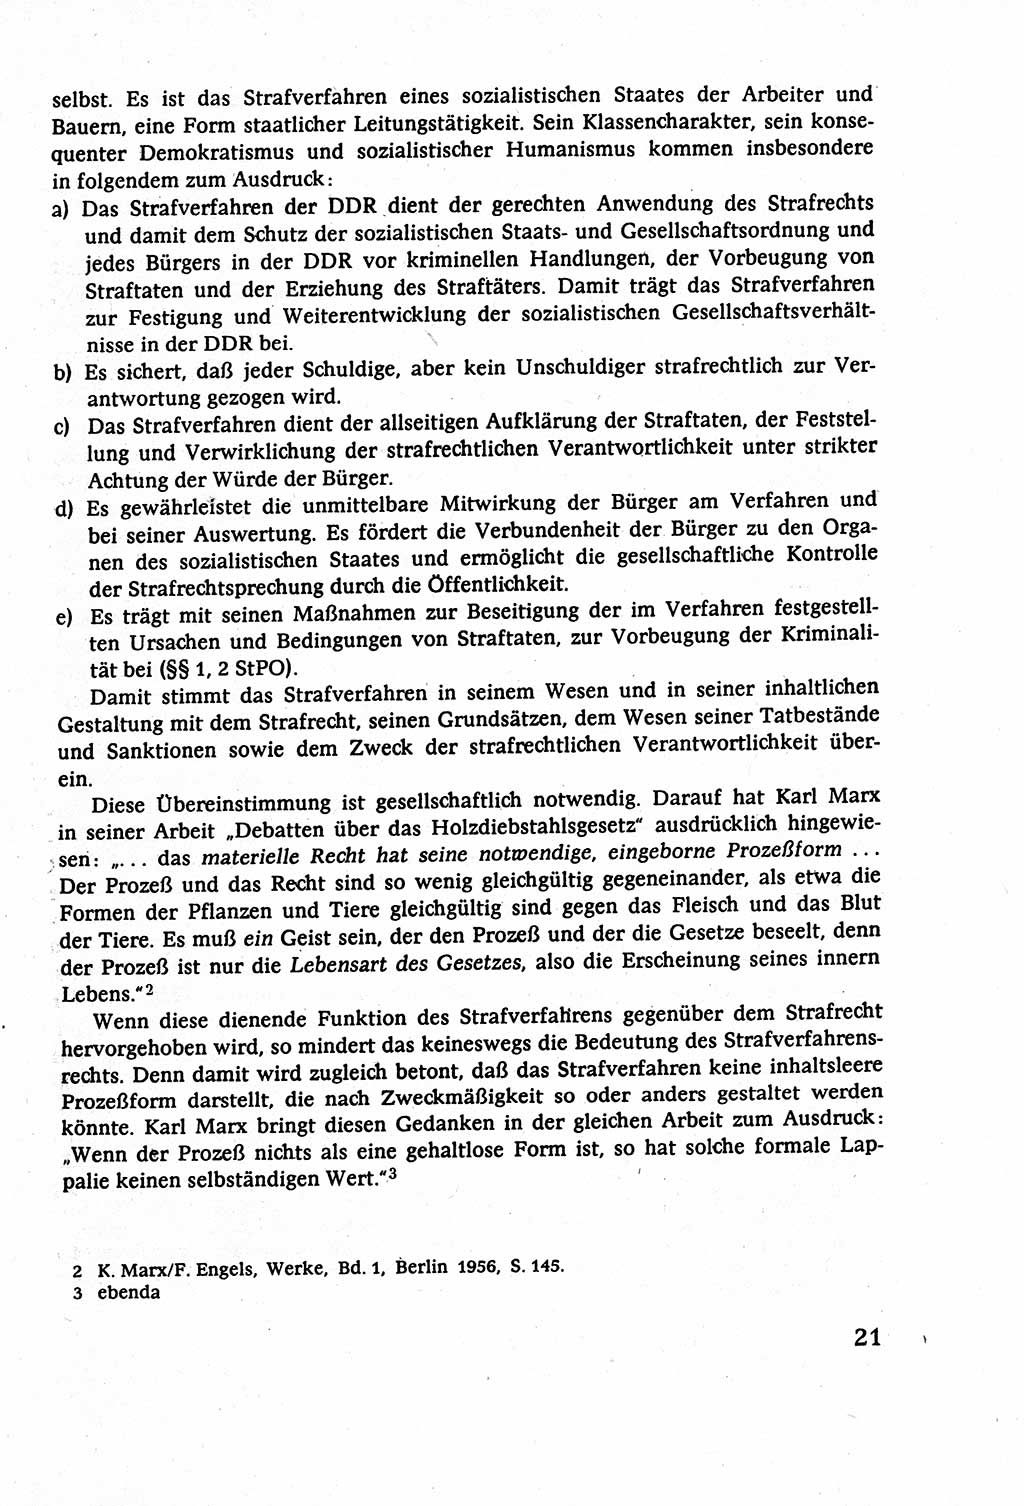 Strafverfahrensrecht [Deutsche Demokratische Republik (DDR)], Lehrbuch 1977, Seite 21 (Strafverf.-R. DDR Lb. 1977, S. 21)